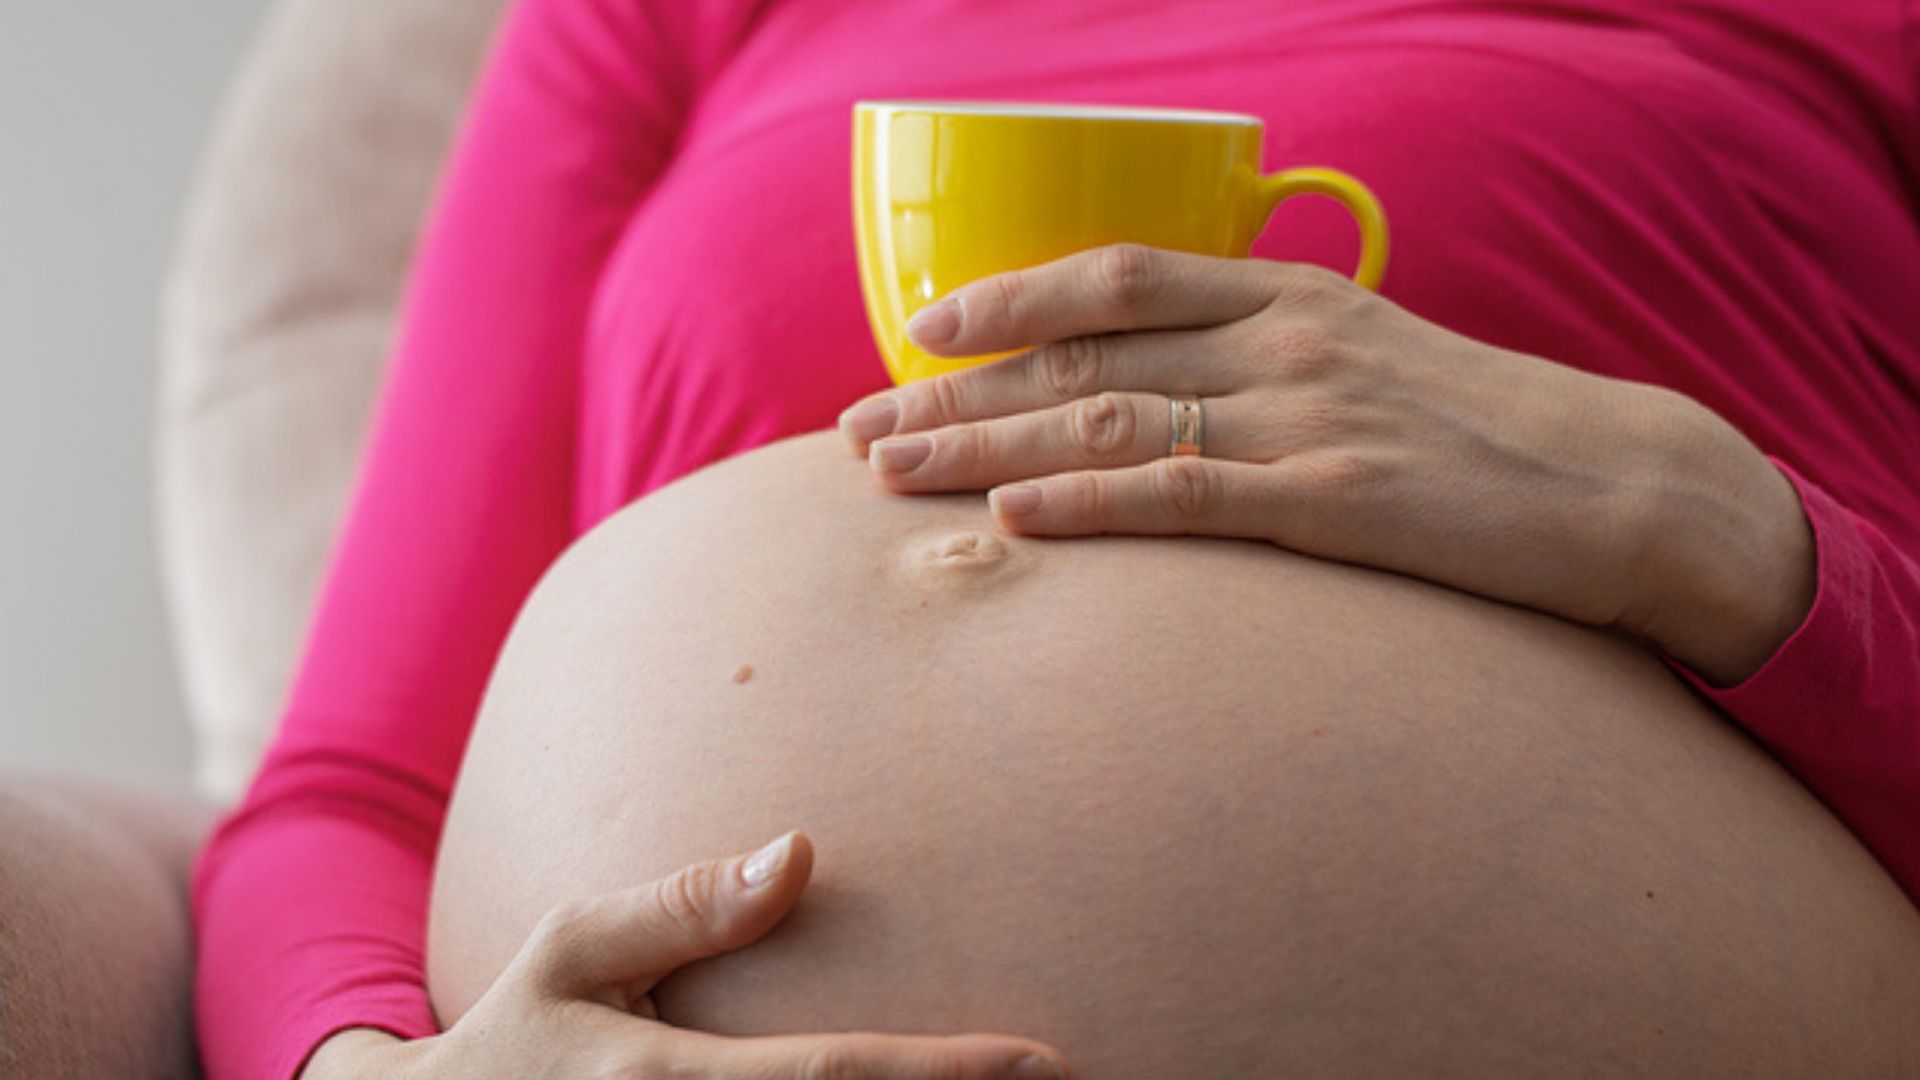 Himbeerblättertee schwangerschaft dosierung - Unsere Auswahl unter der Vielzahl an verglichenenHimbeerblättertee schwangerschaft dosierung